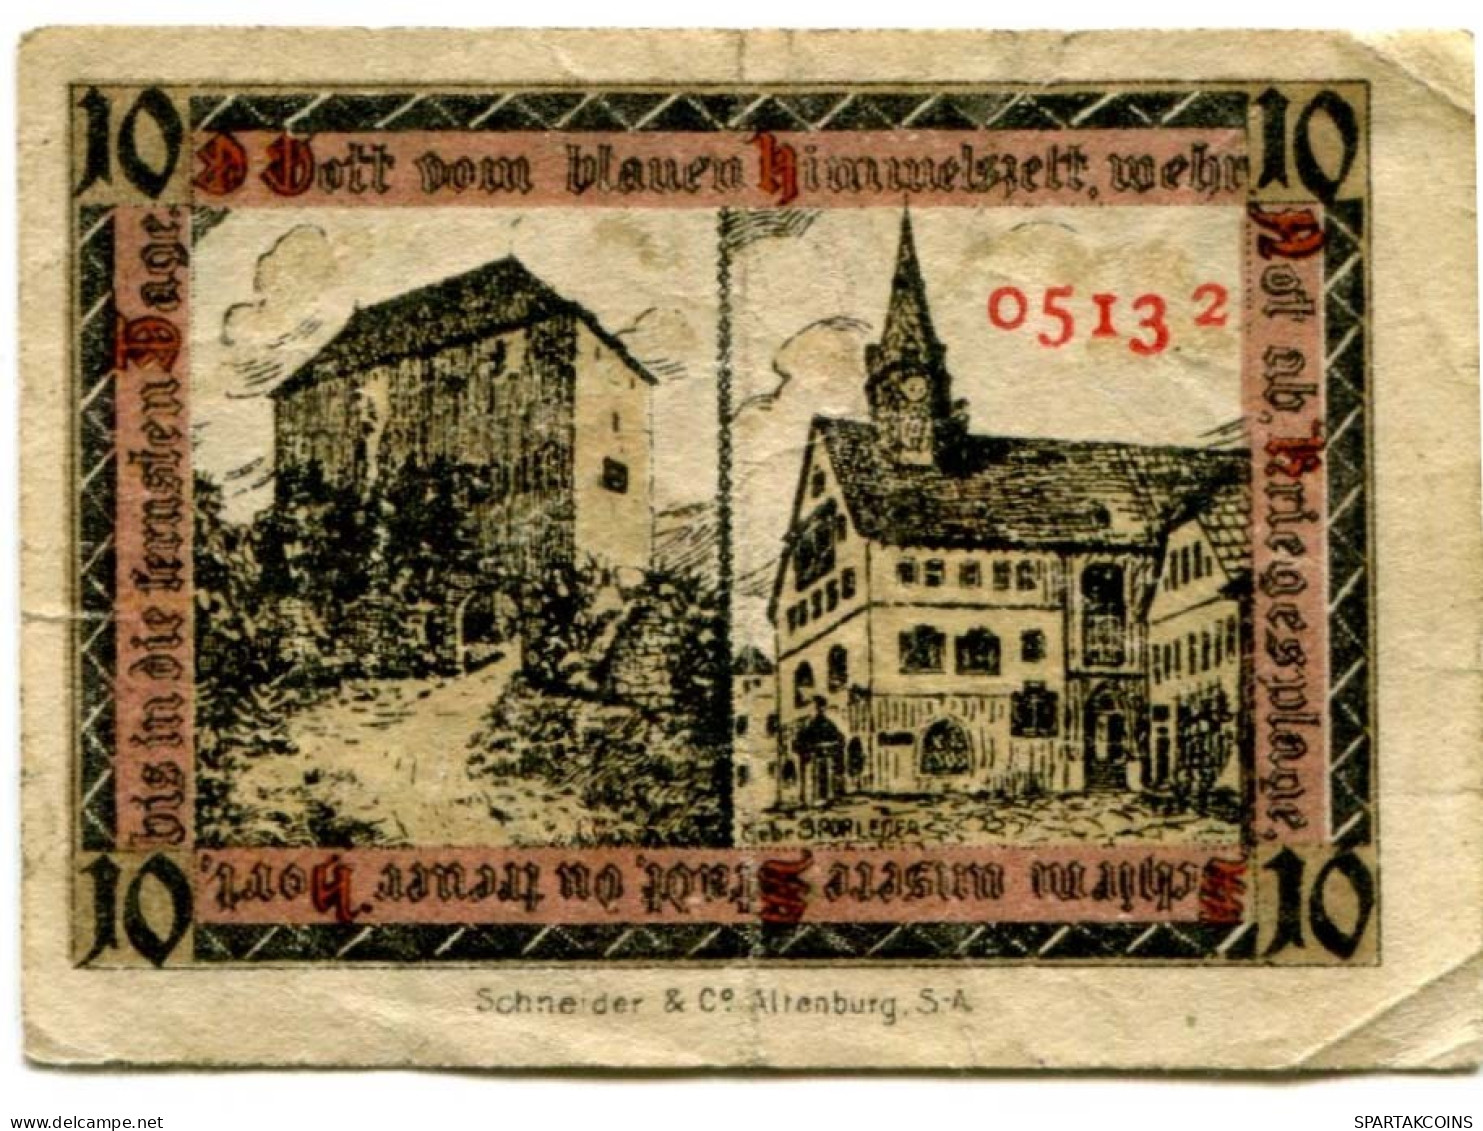 10 PFENNIG 1920 Stadt ORLAMÜNDE Thuringia DEUTSCHLAND Notgeld Papiergeld Banknote #PL689 - [11] Local Banknote Issues